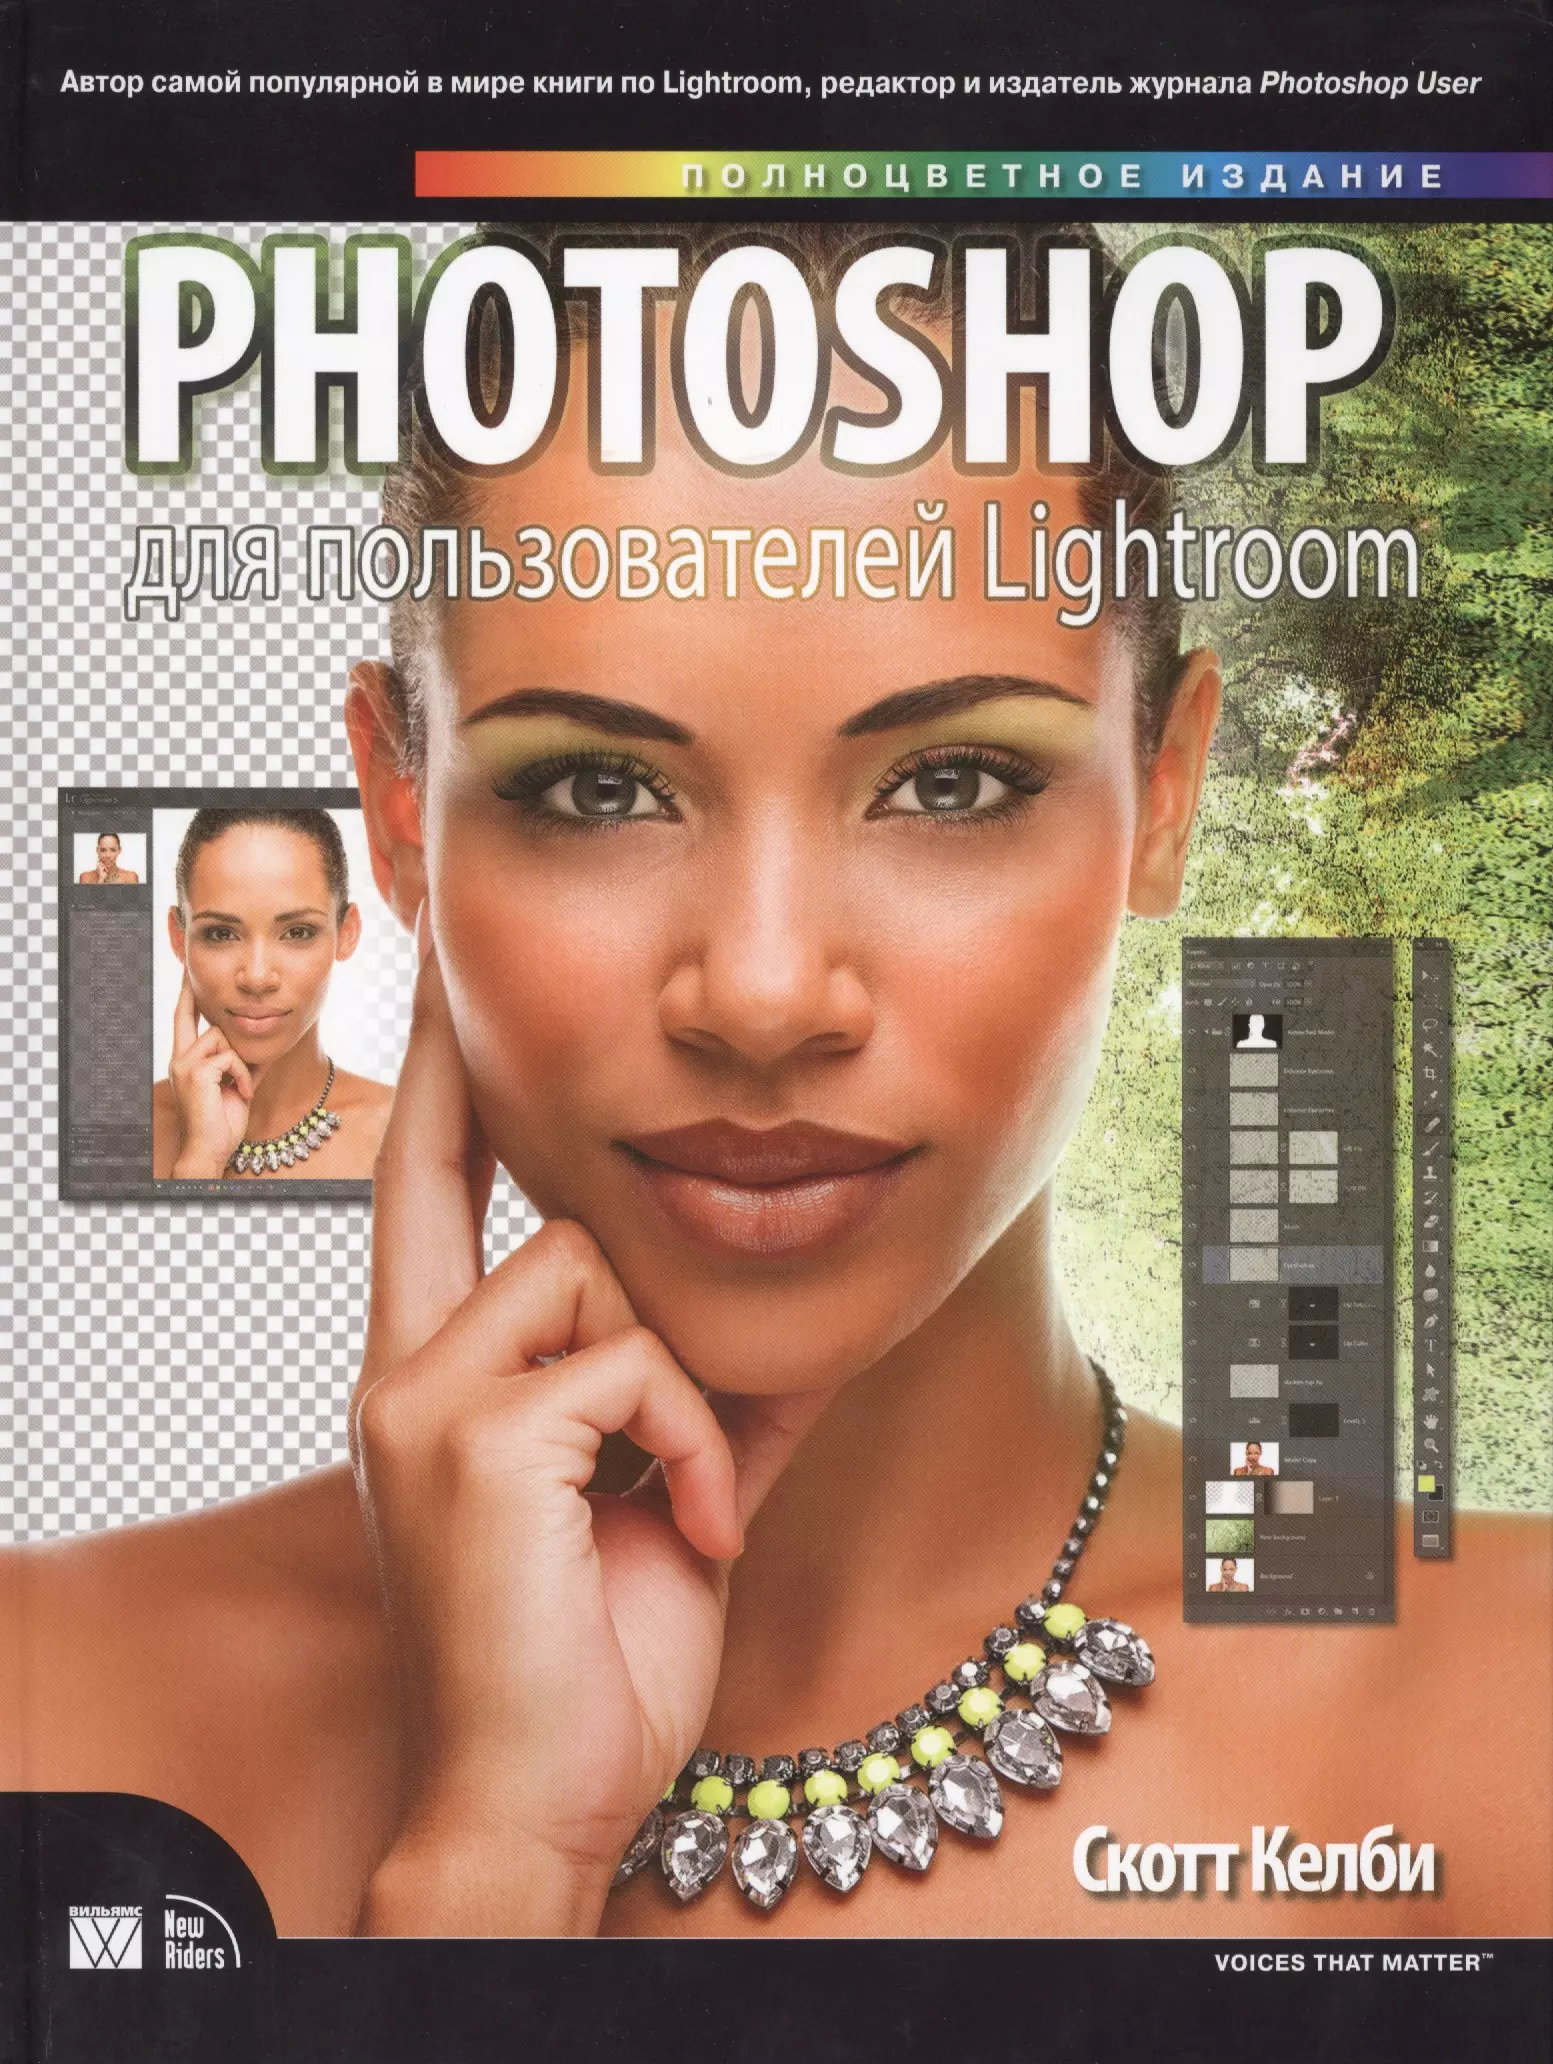 цена Келби Скотт Photoshop для пользователей Lightroom